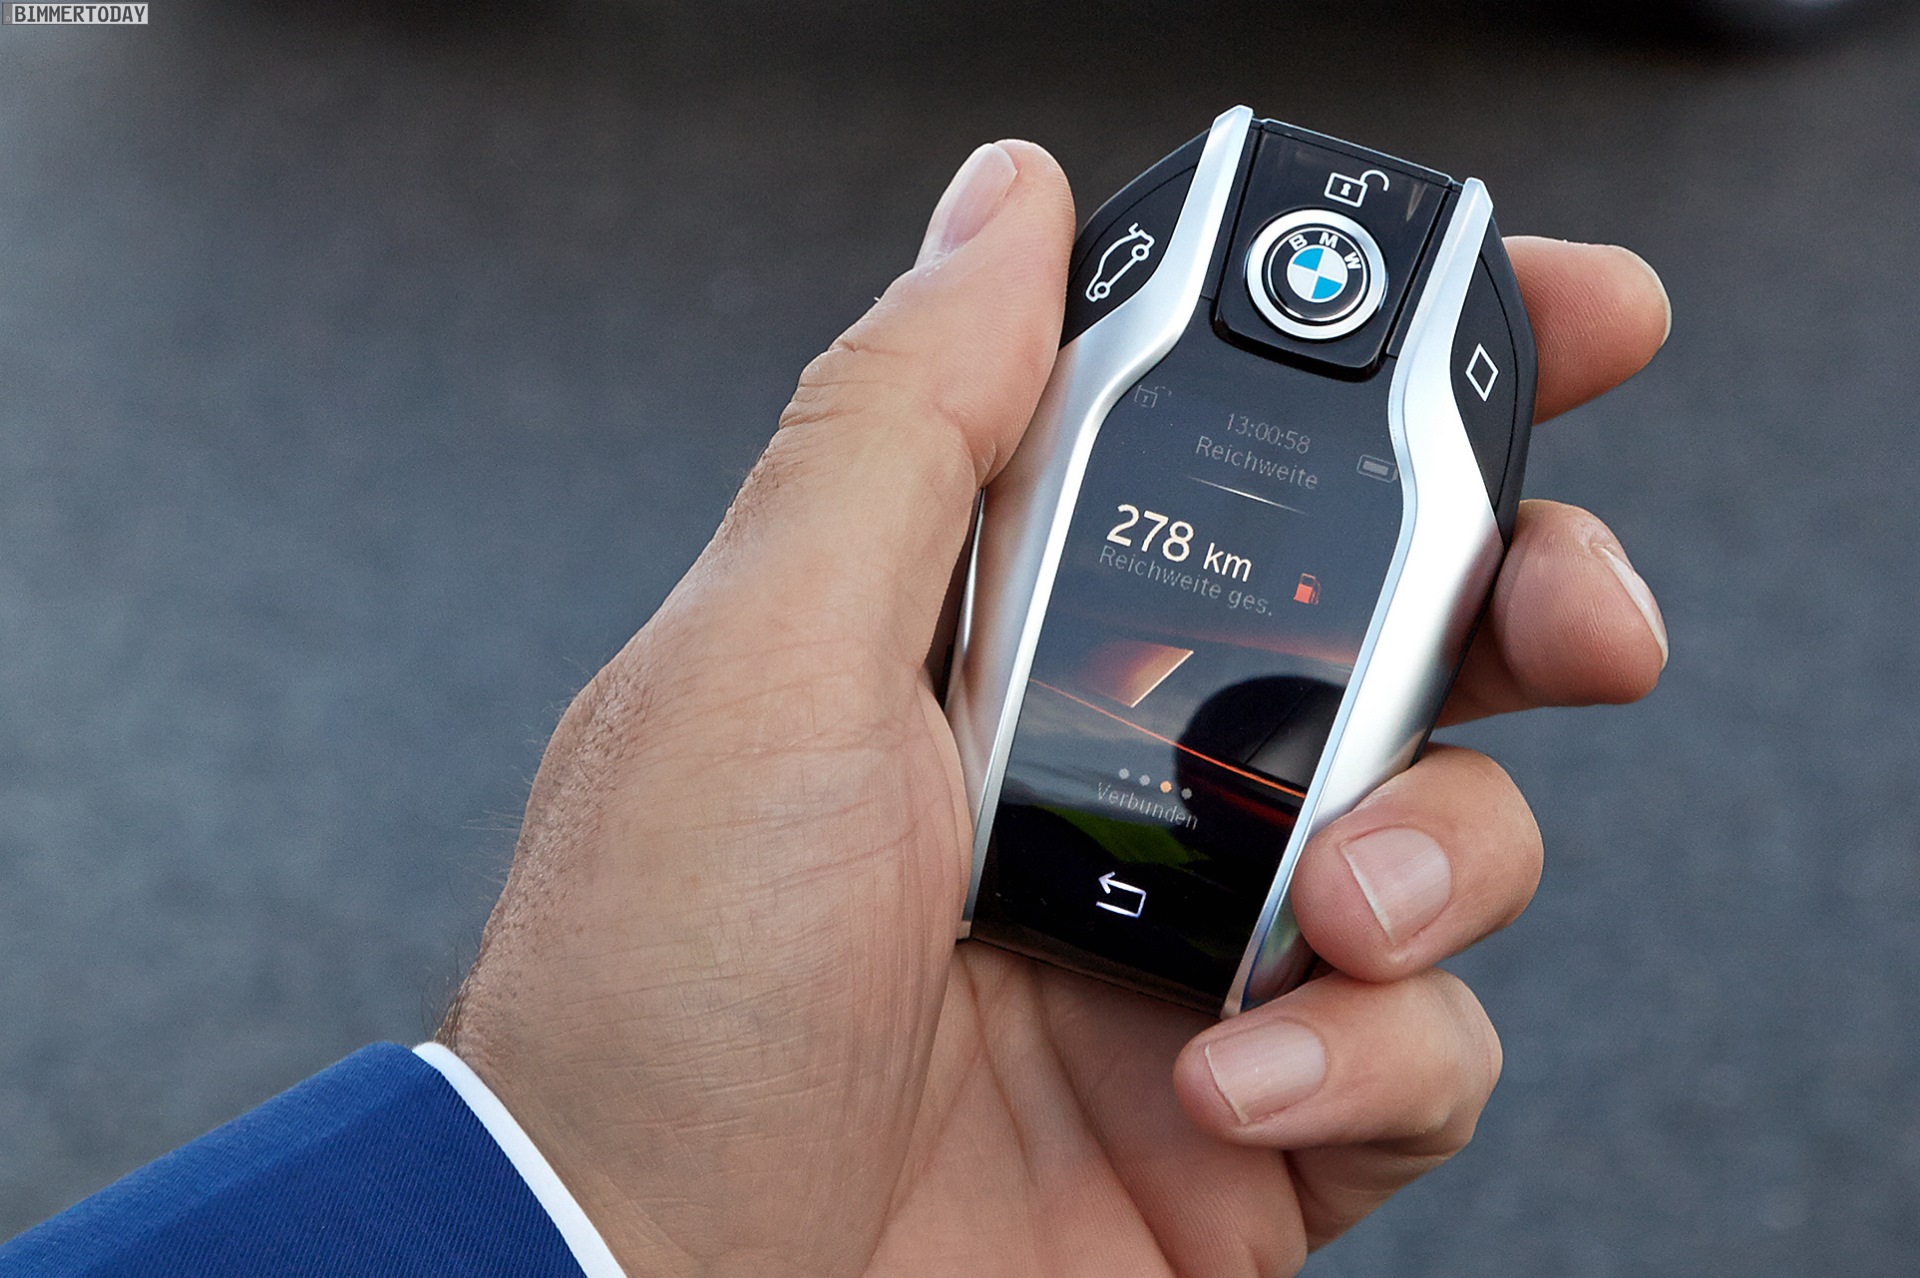 BMW 7er 2015: Display-Key als Auto-Schlüssel einer neuen Zeit